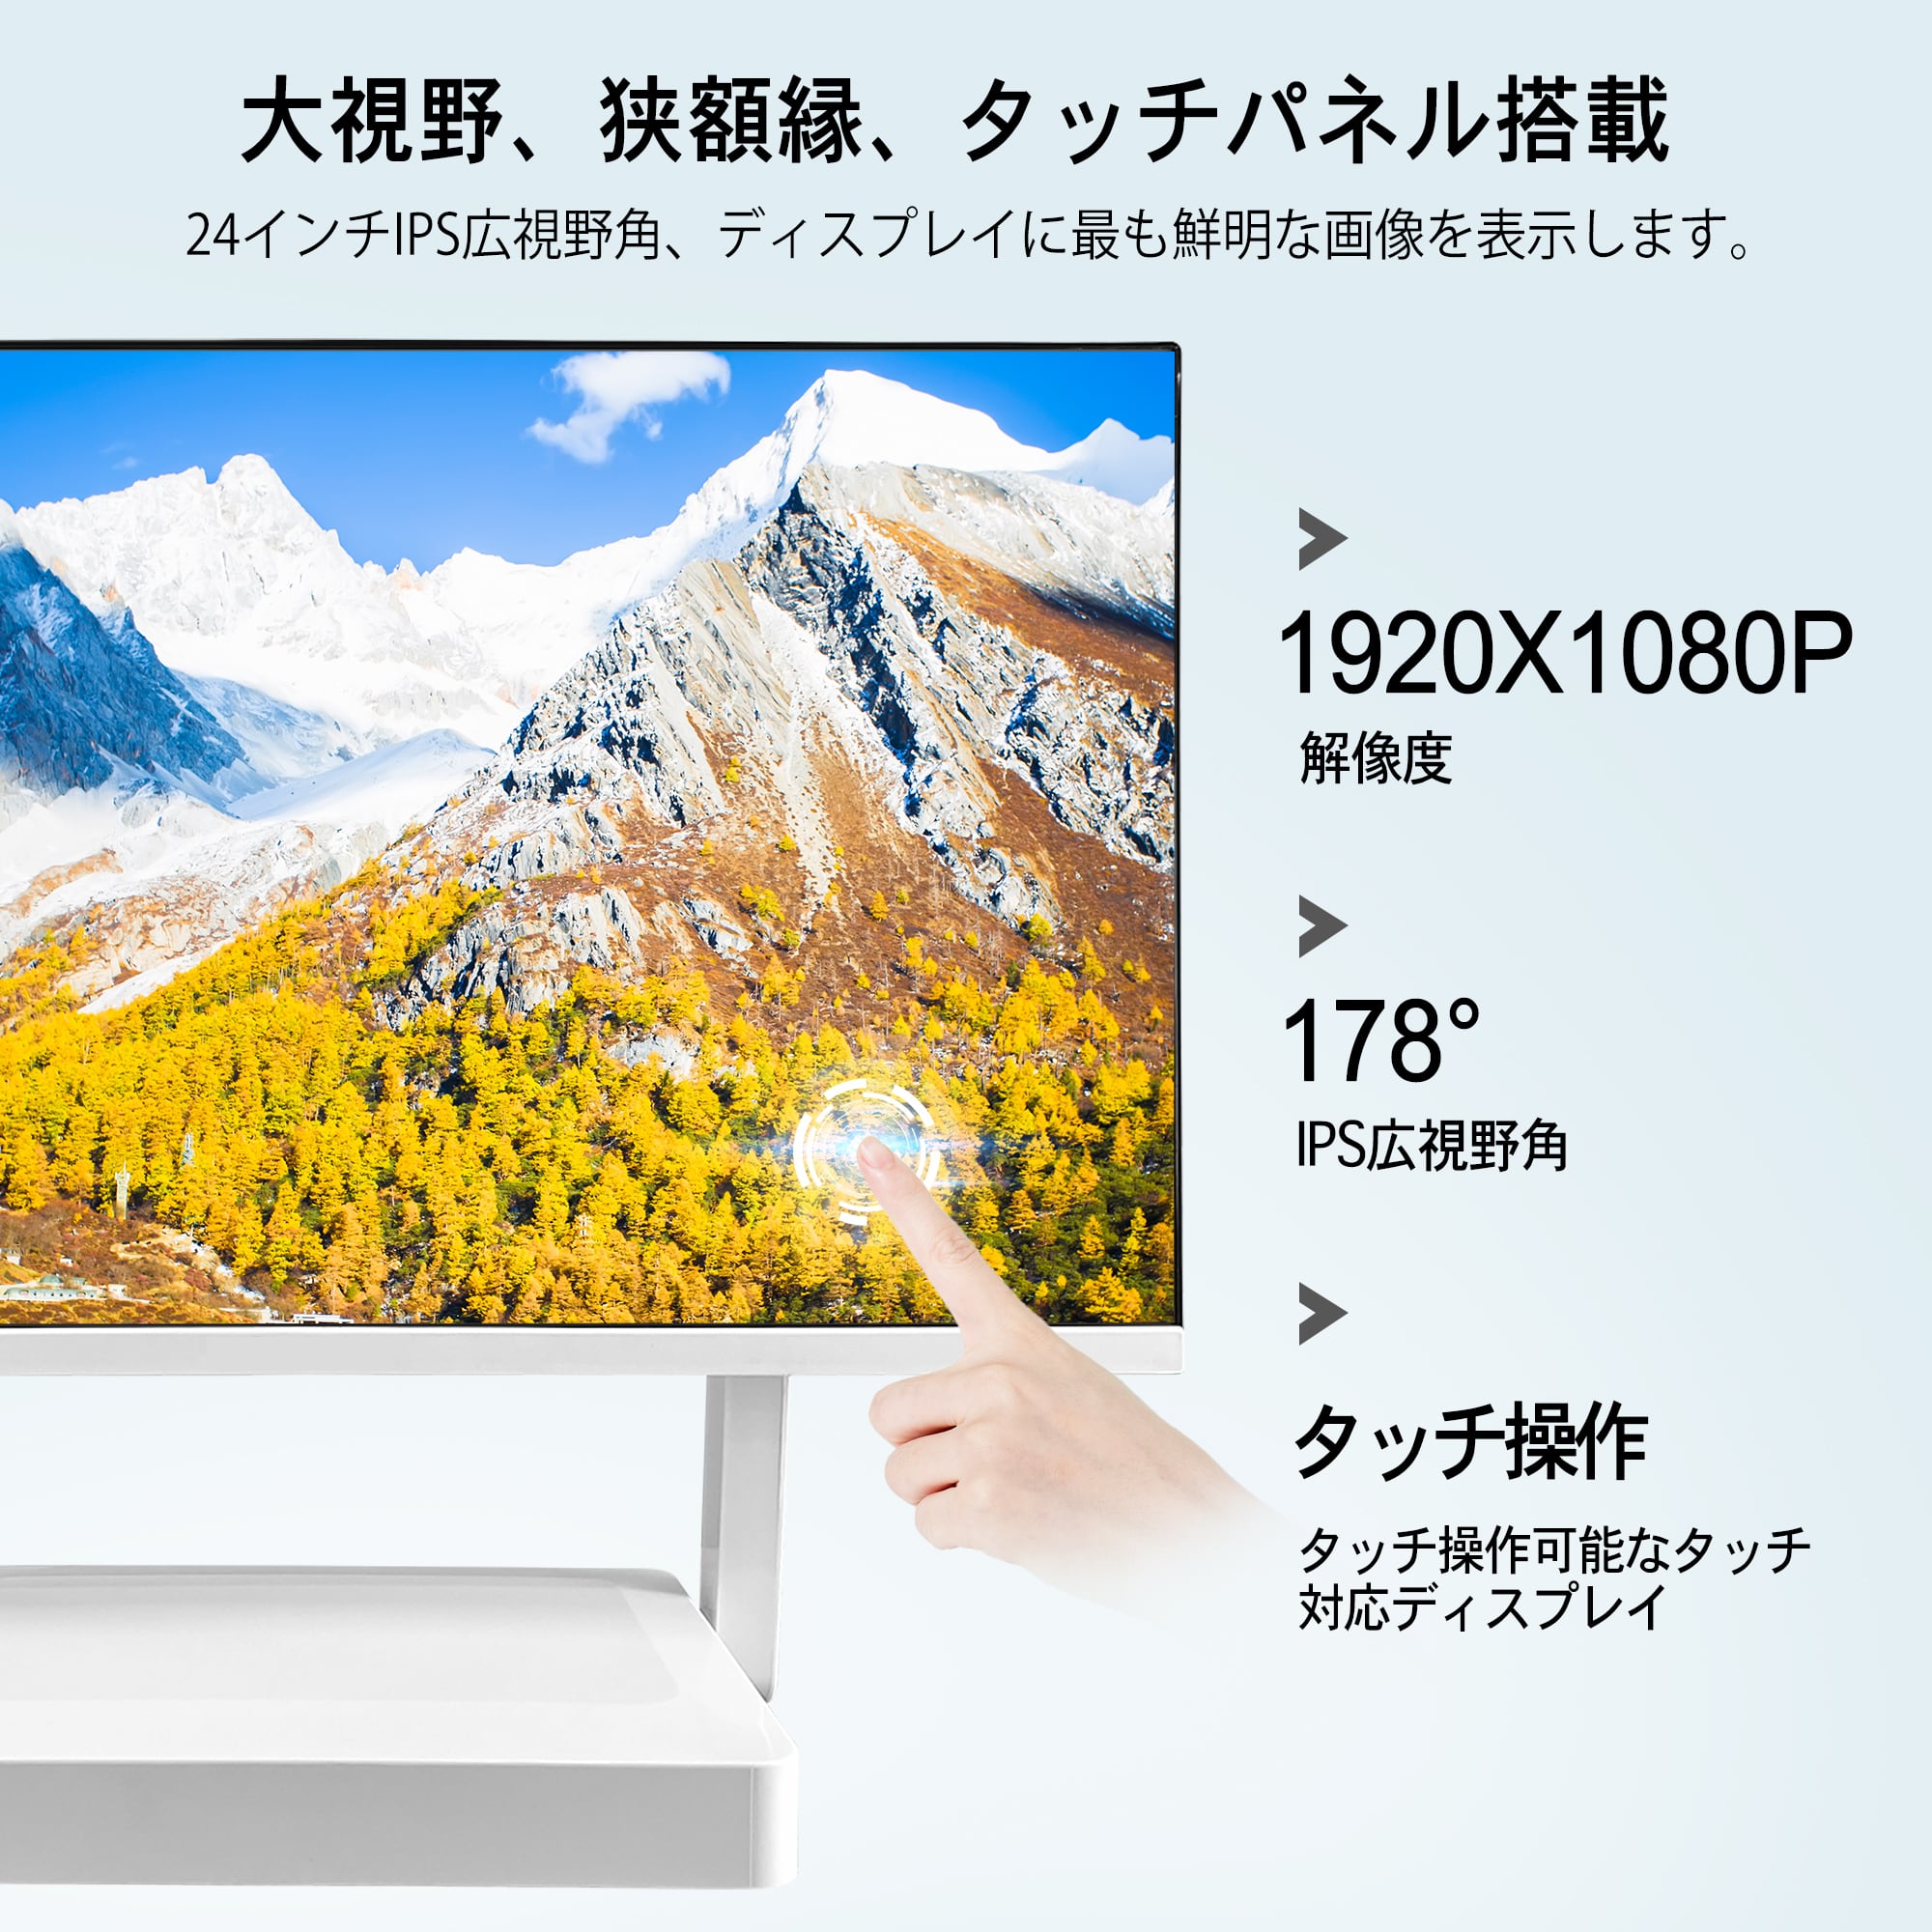 VAIOパソコンとテレビ一体型☆Win10☆ PS4対応 HDD 1TB